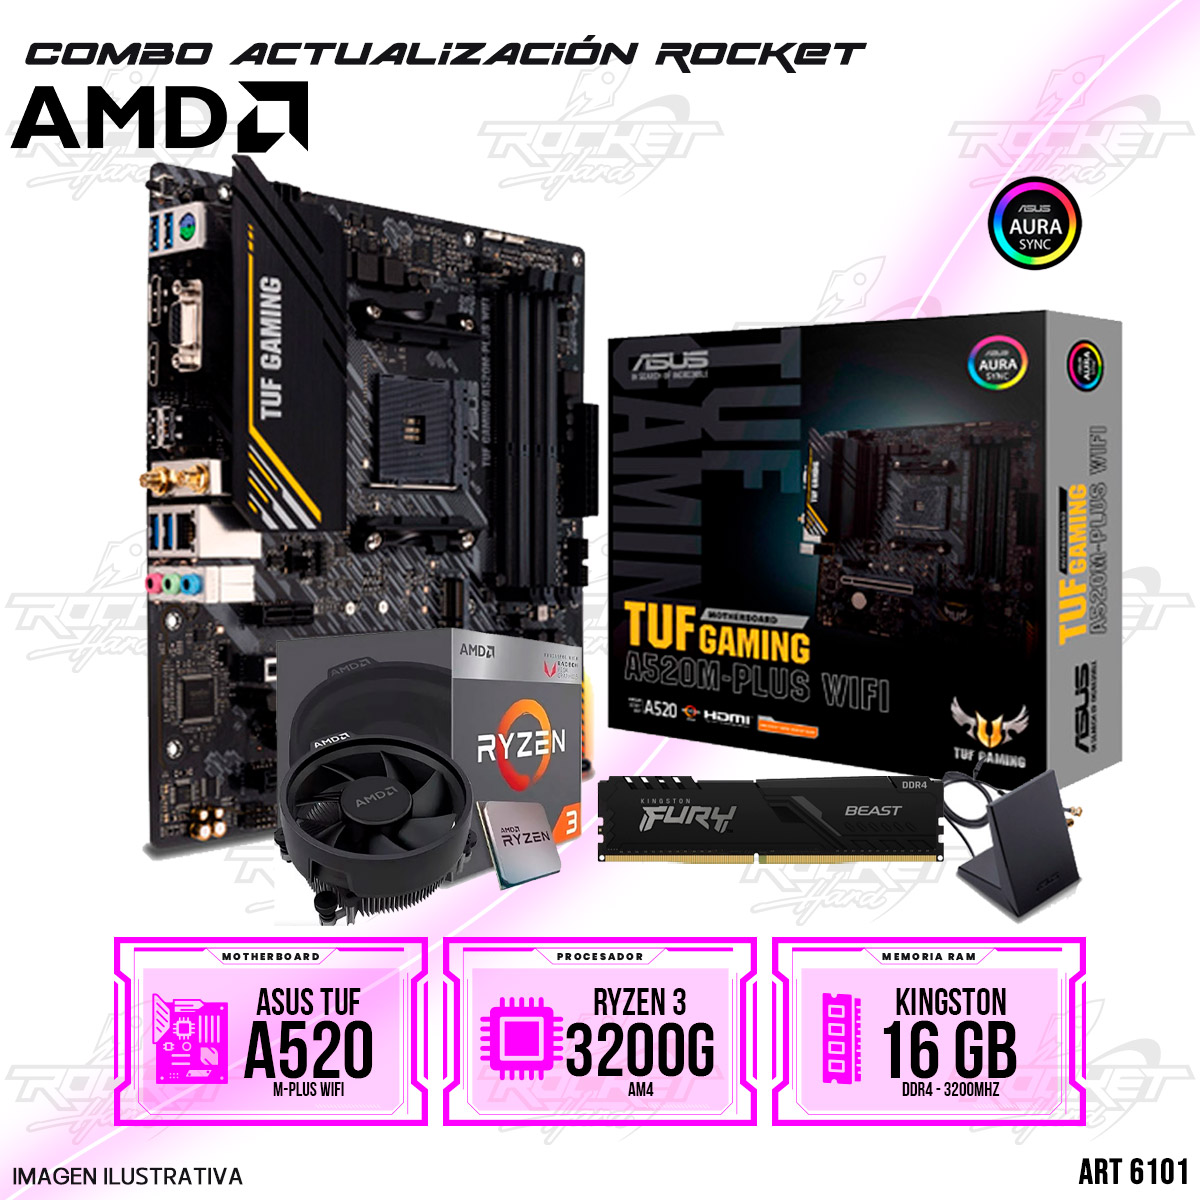 COMBO ROCKET AMD RYZEN 3 3200G - A520 WIFI - 16GB RAM